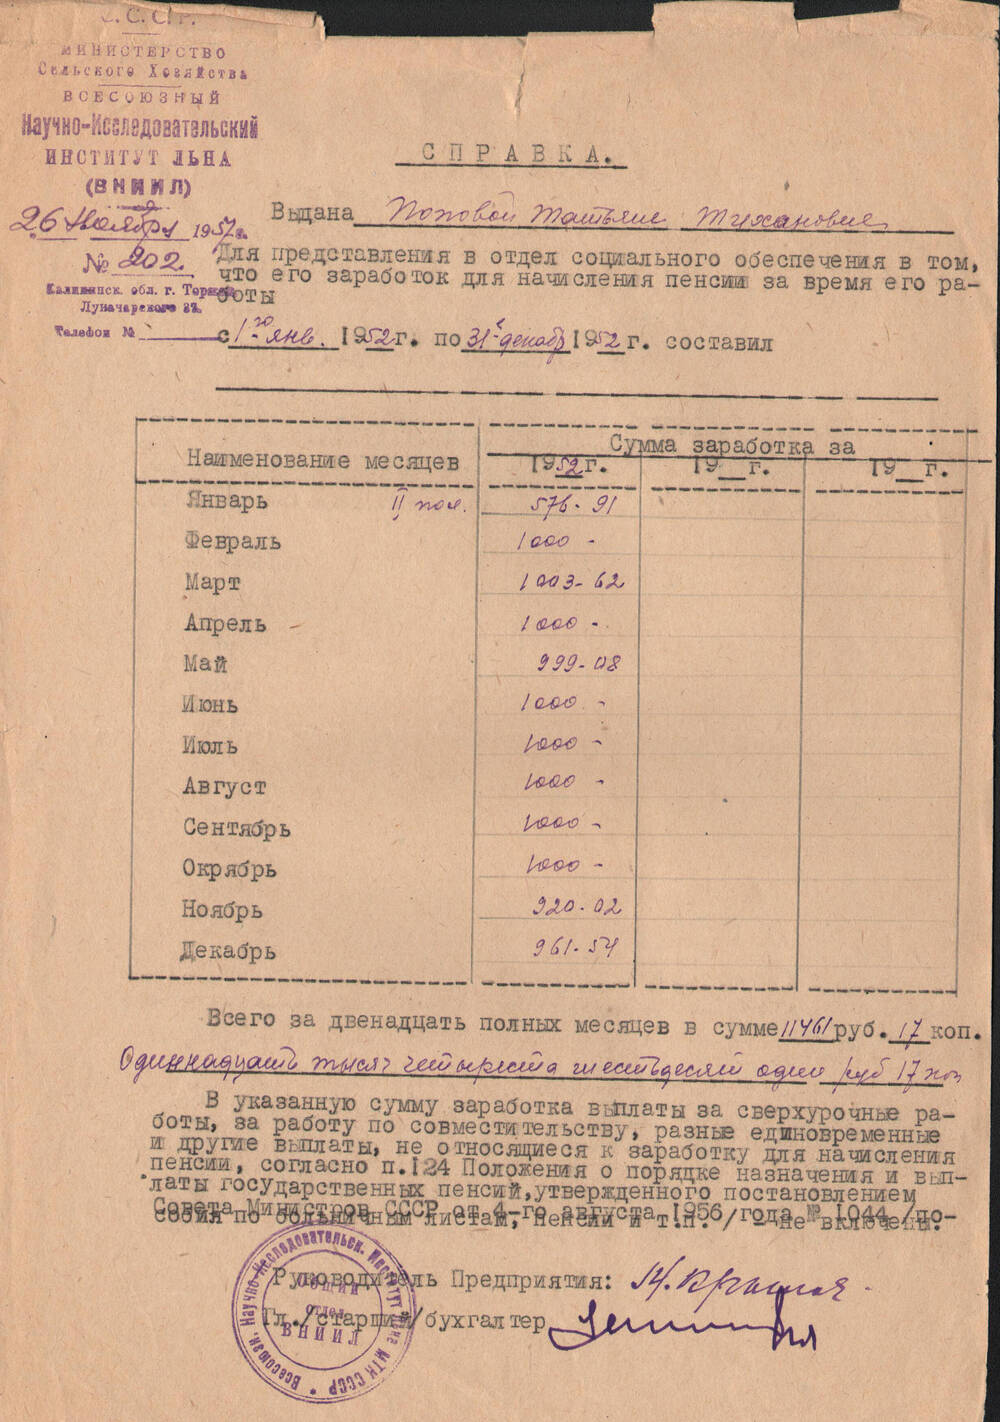 Справка о зарплате за 1952 год, выданная Поповой Т.Т. ВНИИЛ для начисления пенсии